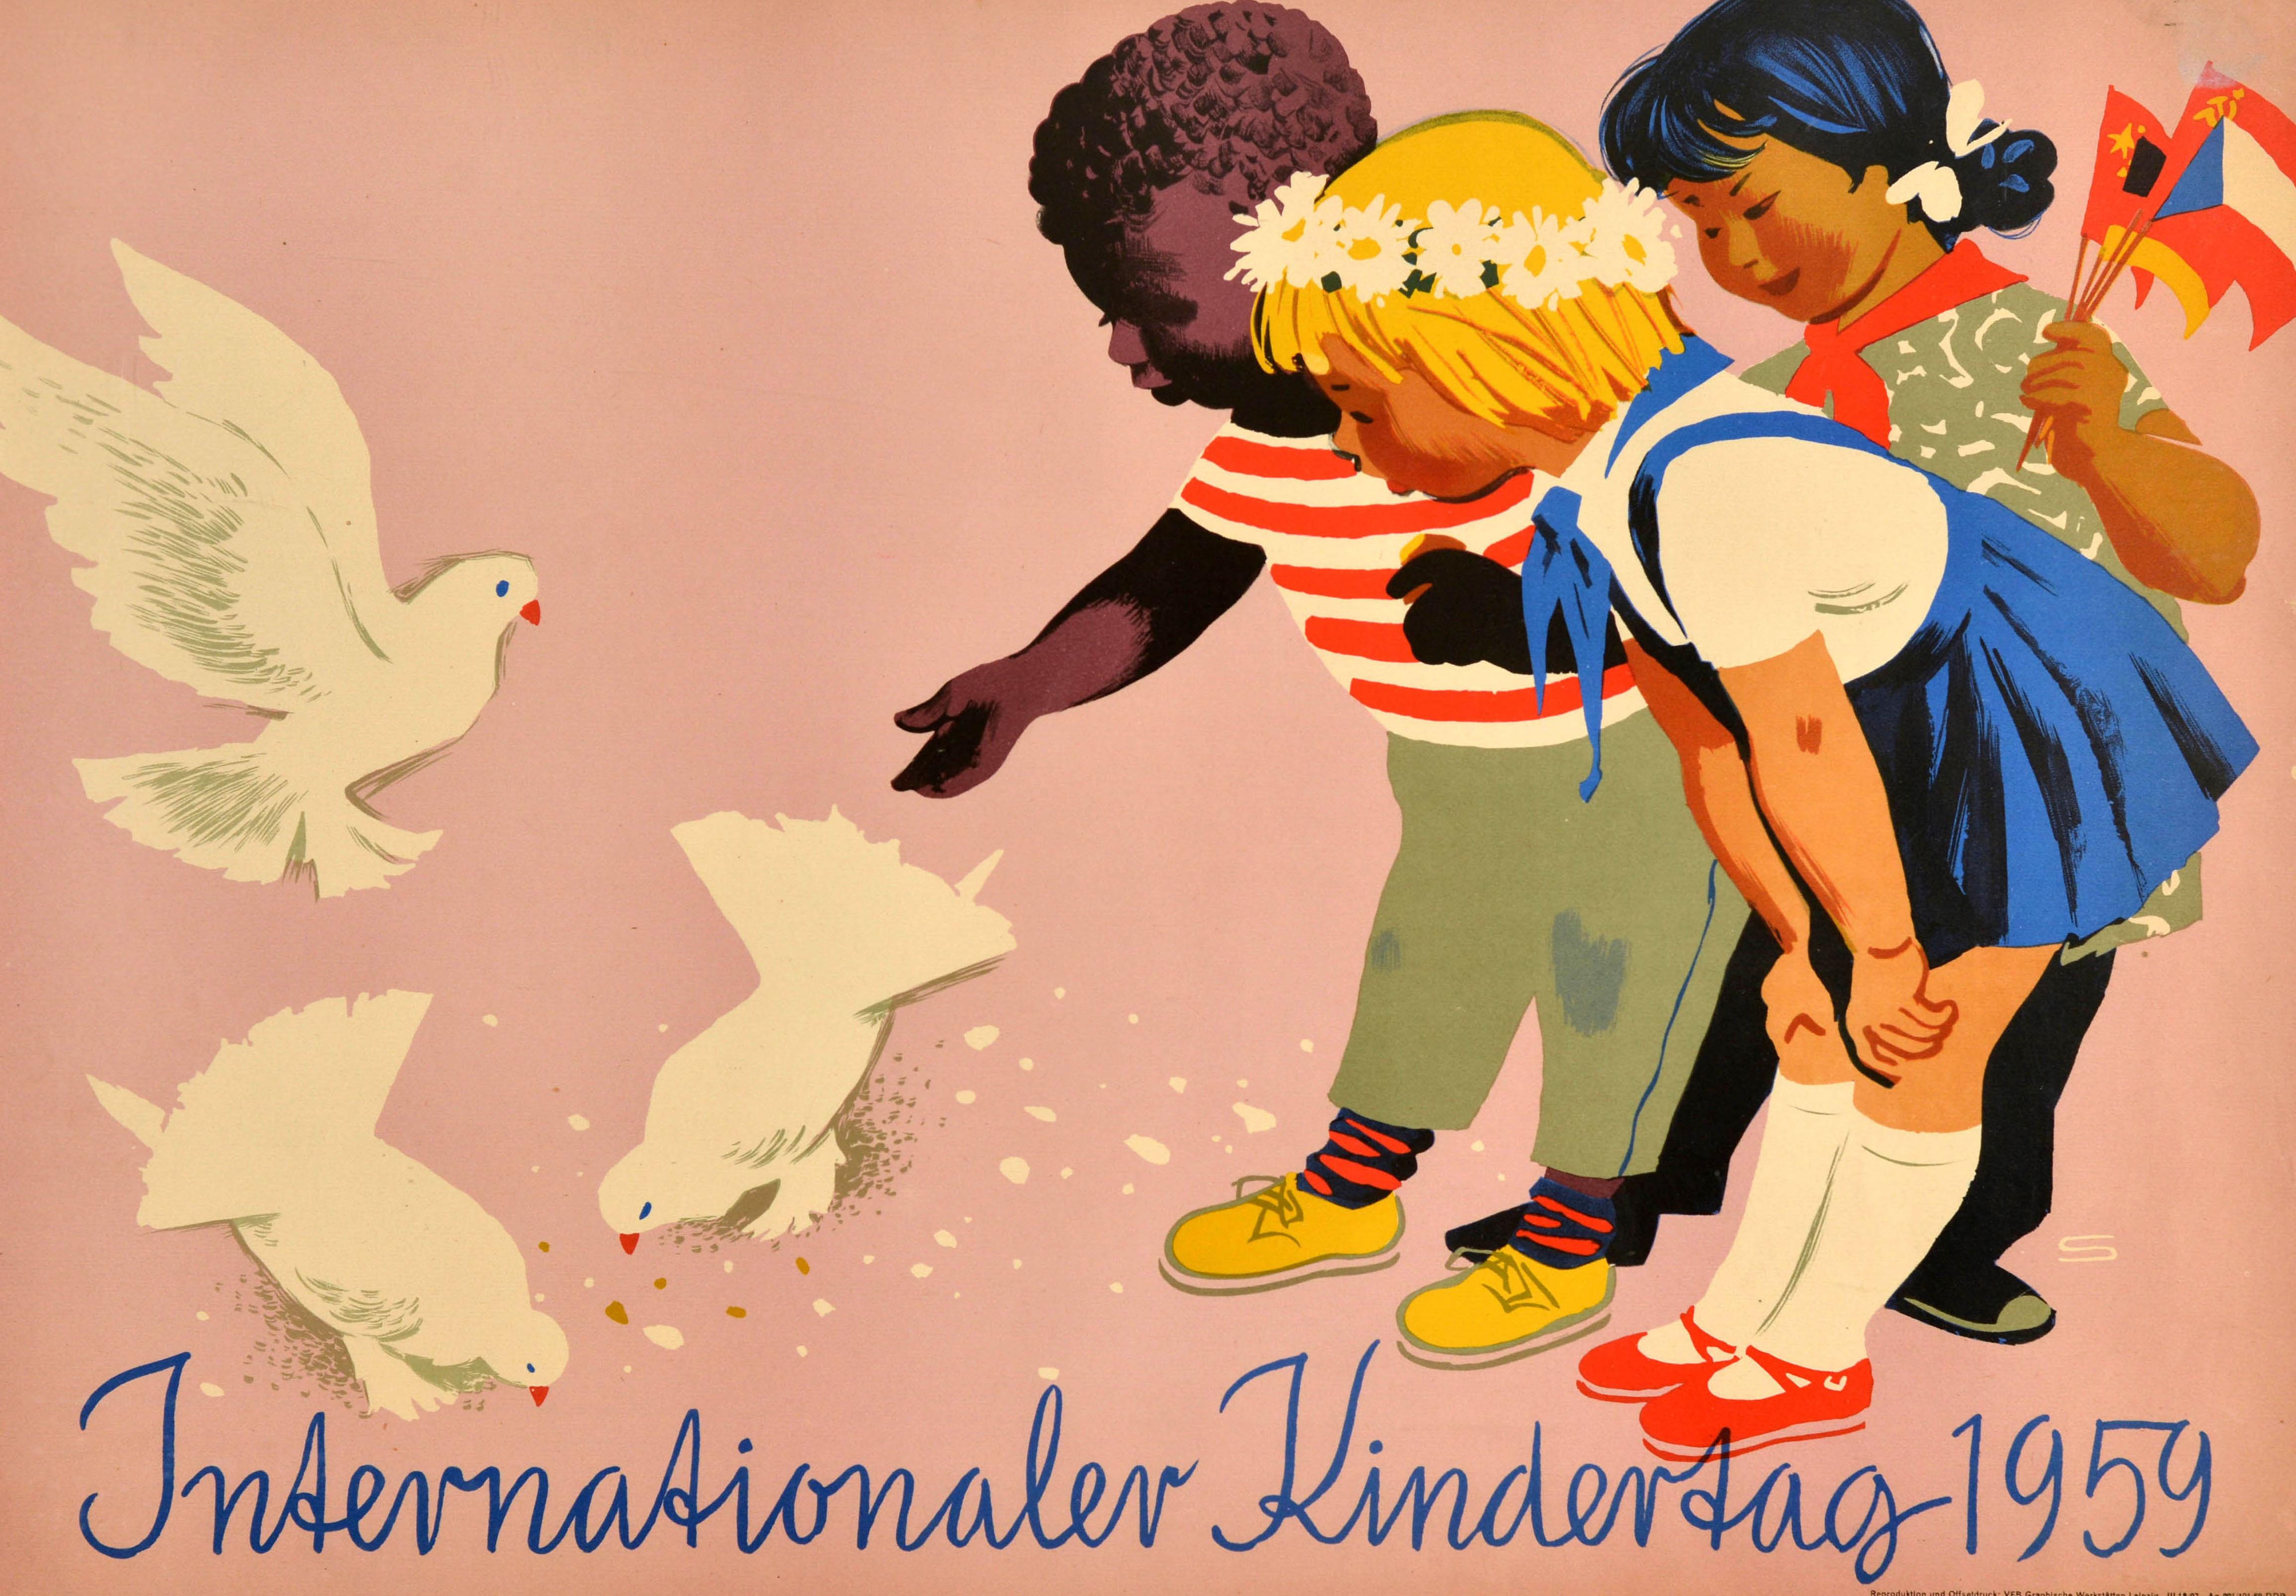 Originales Vintage-Plakat zum Internationalen Kindertag 1959 mit einer Illustration von drei Kindern aus verschiedenen Nationen, die drei weiße Tauben füttern, die für den Frieden stehen, und sie beobachten, wobei ein Mädchen eine Blumenkette im